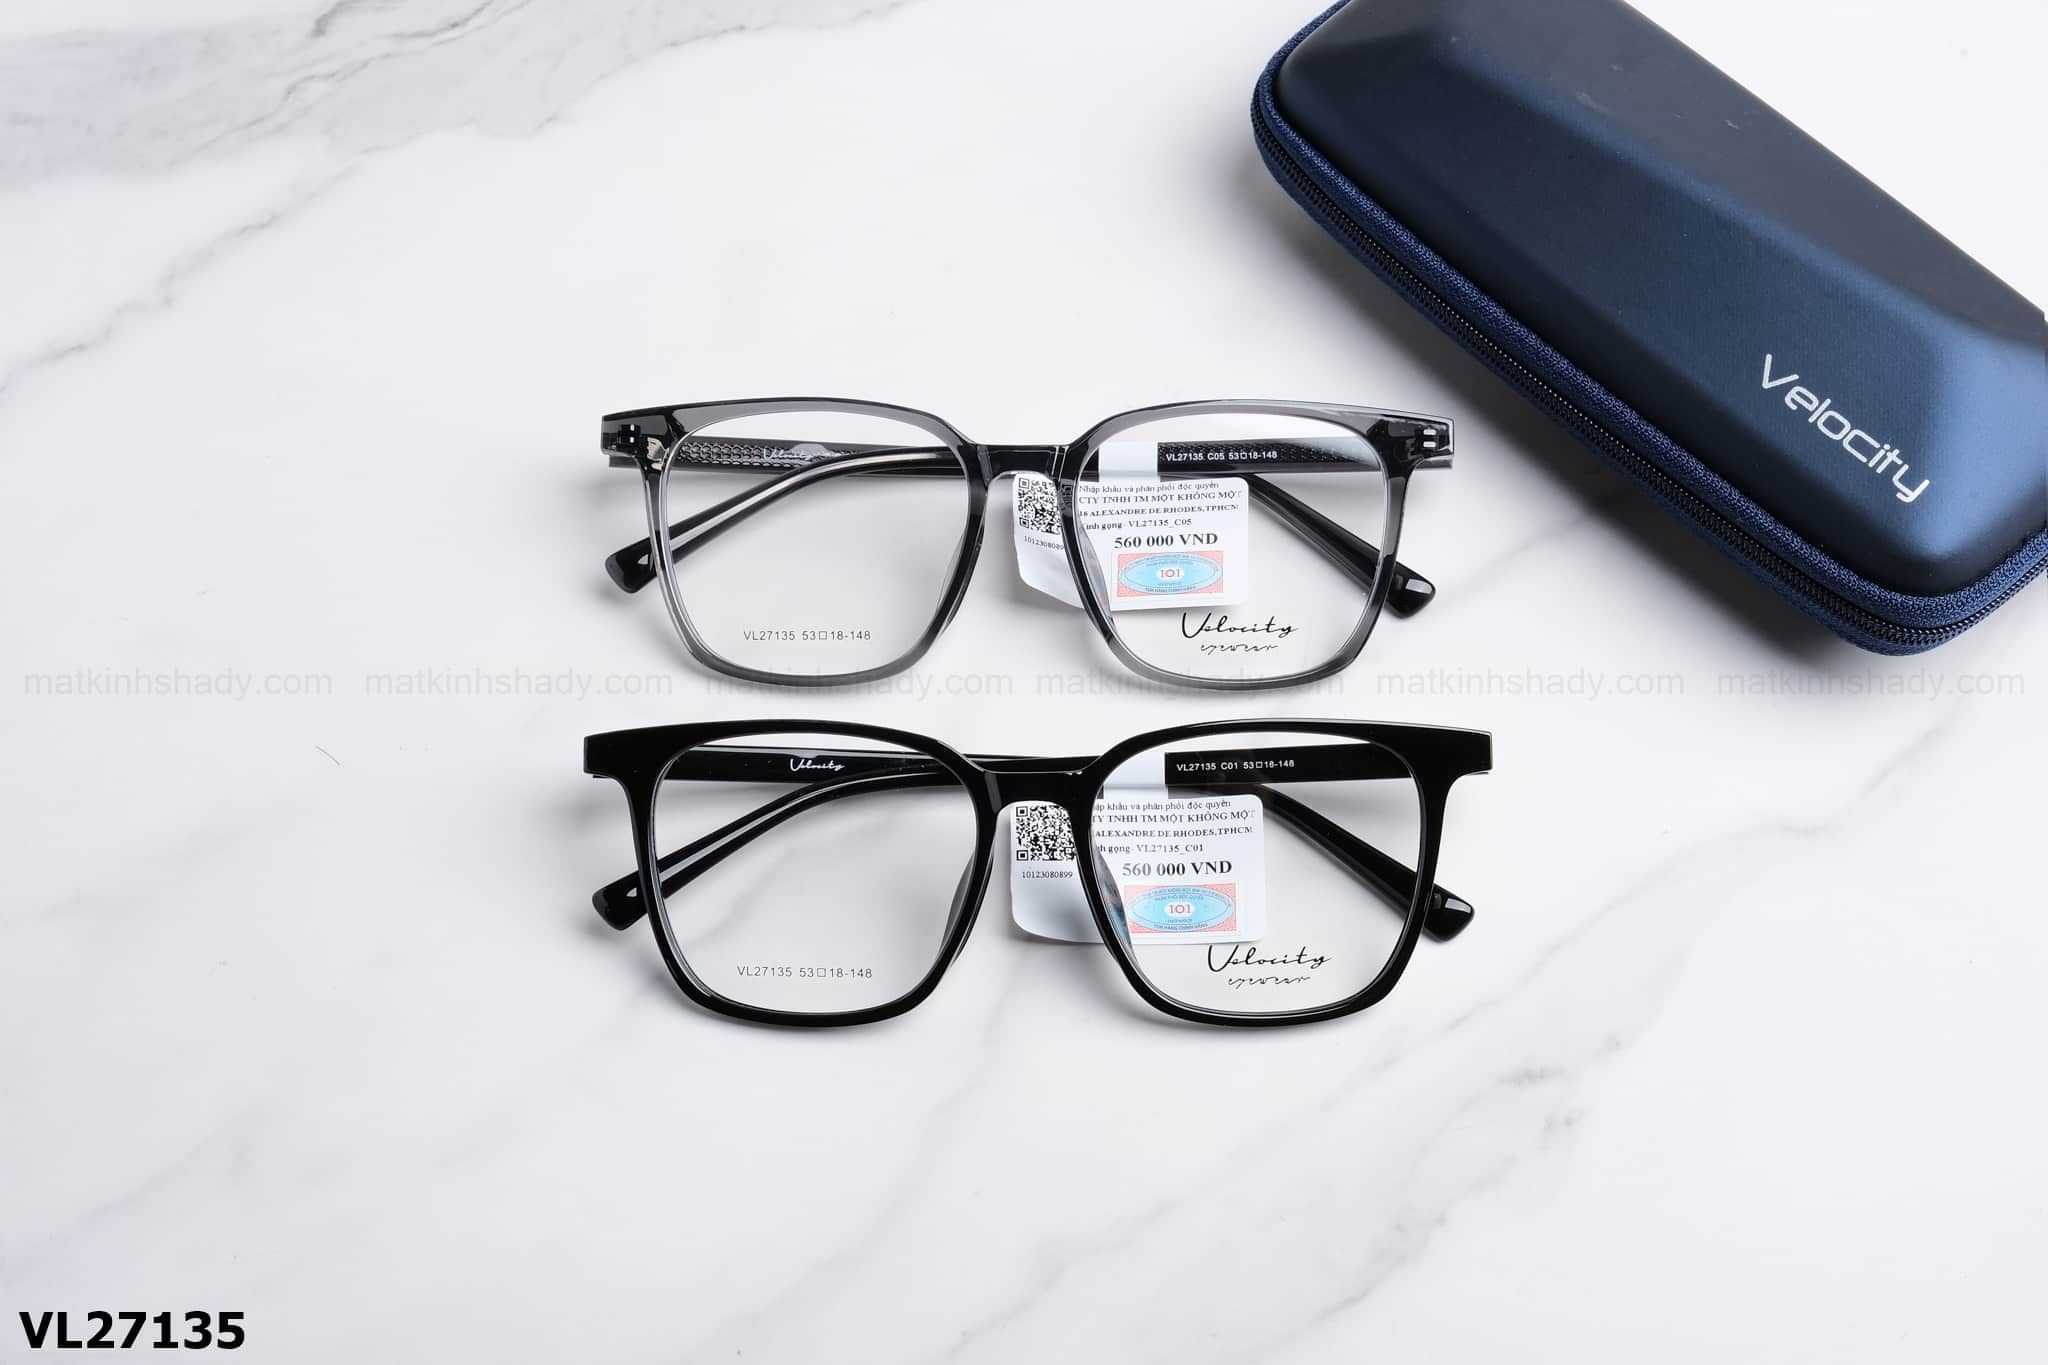  Velocity Eyewear - Glasses - VL27135 